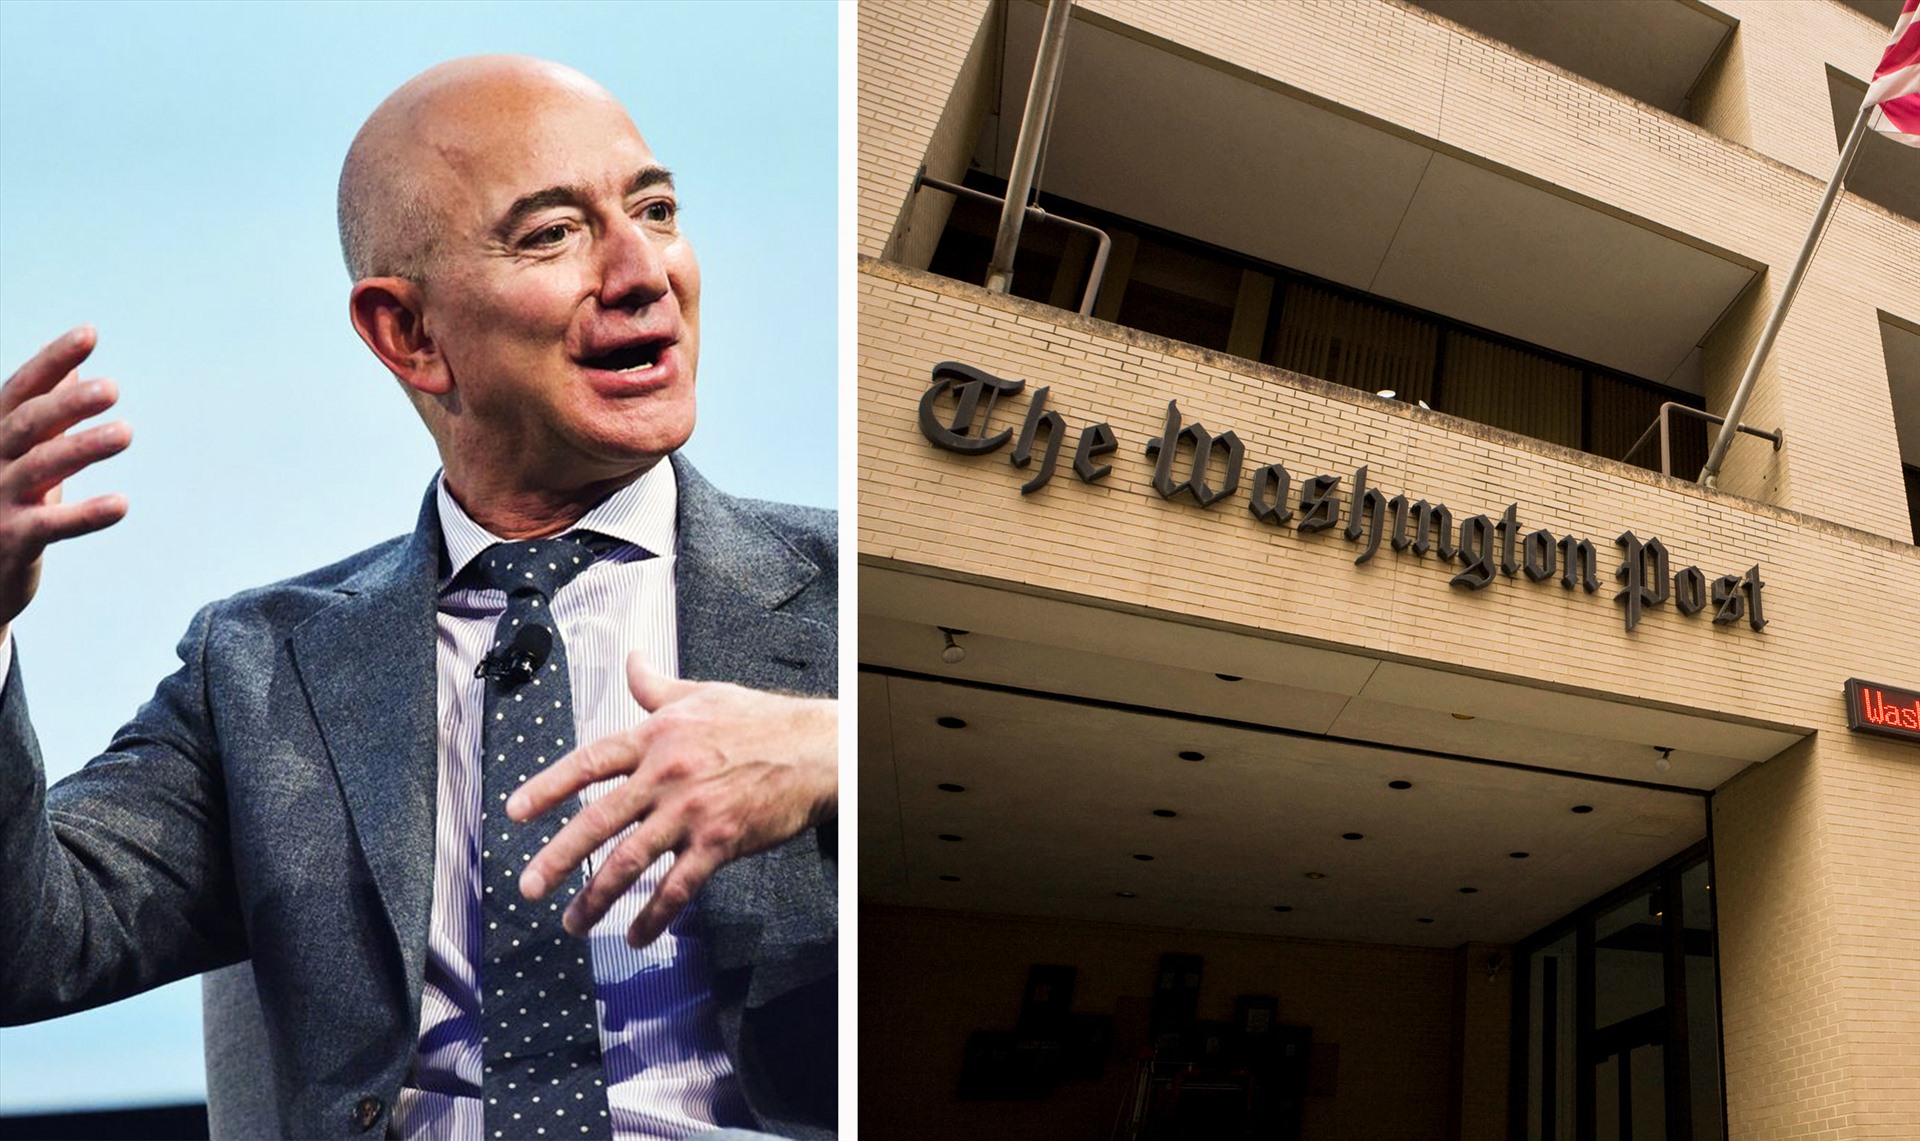 Tháng 8.2013, Bezos mua Washington Post với giá 250 triệu USD. Từ năm 2013 đến năm 2015, tài sản Jeff Bezos tăng liên tiếp và không có dấu hiệu chững lại. Năm 2013, tỉ phú này đứng ở top 12 với 27,2 tỉ USD thì đến năm 2015 đã vươn top 5 với 47 tỉ USD. Ảnh: ST